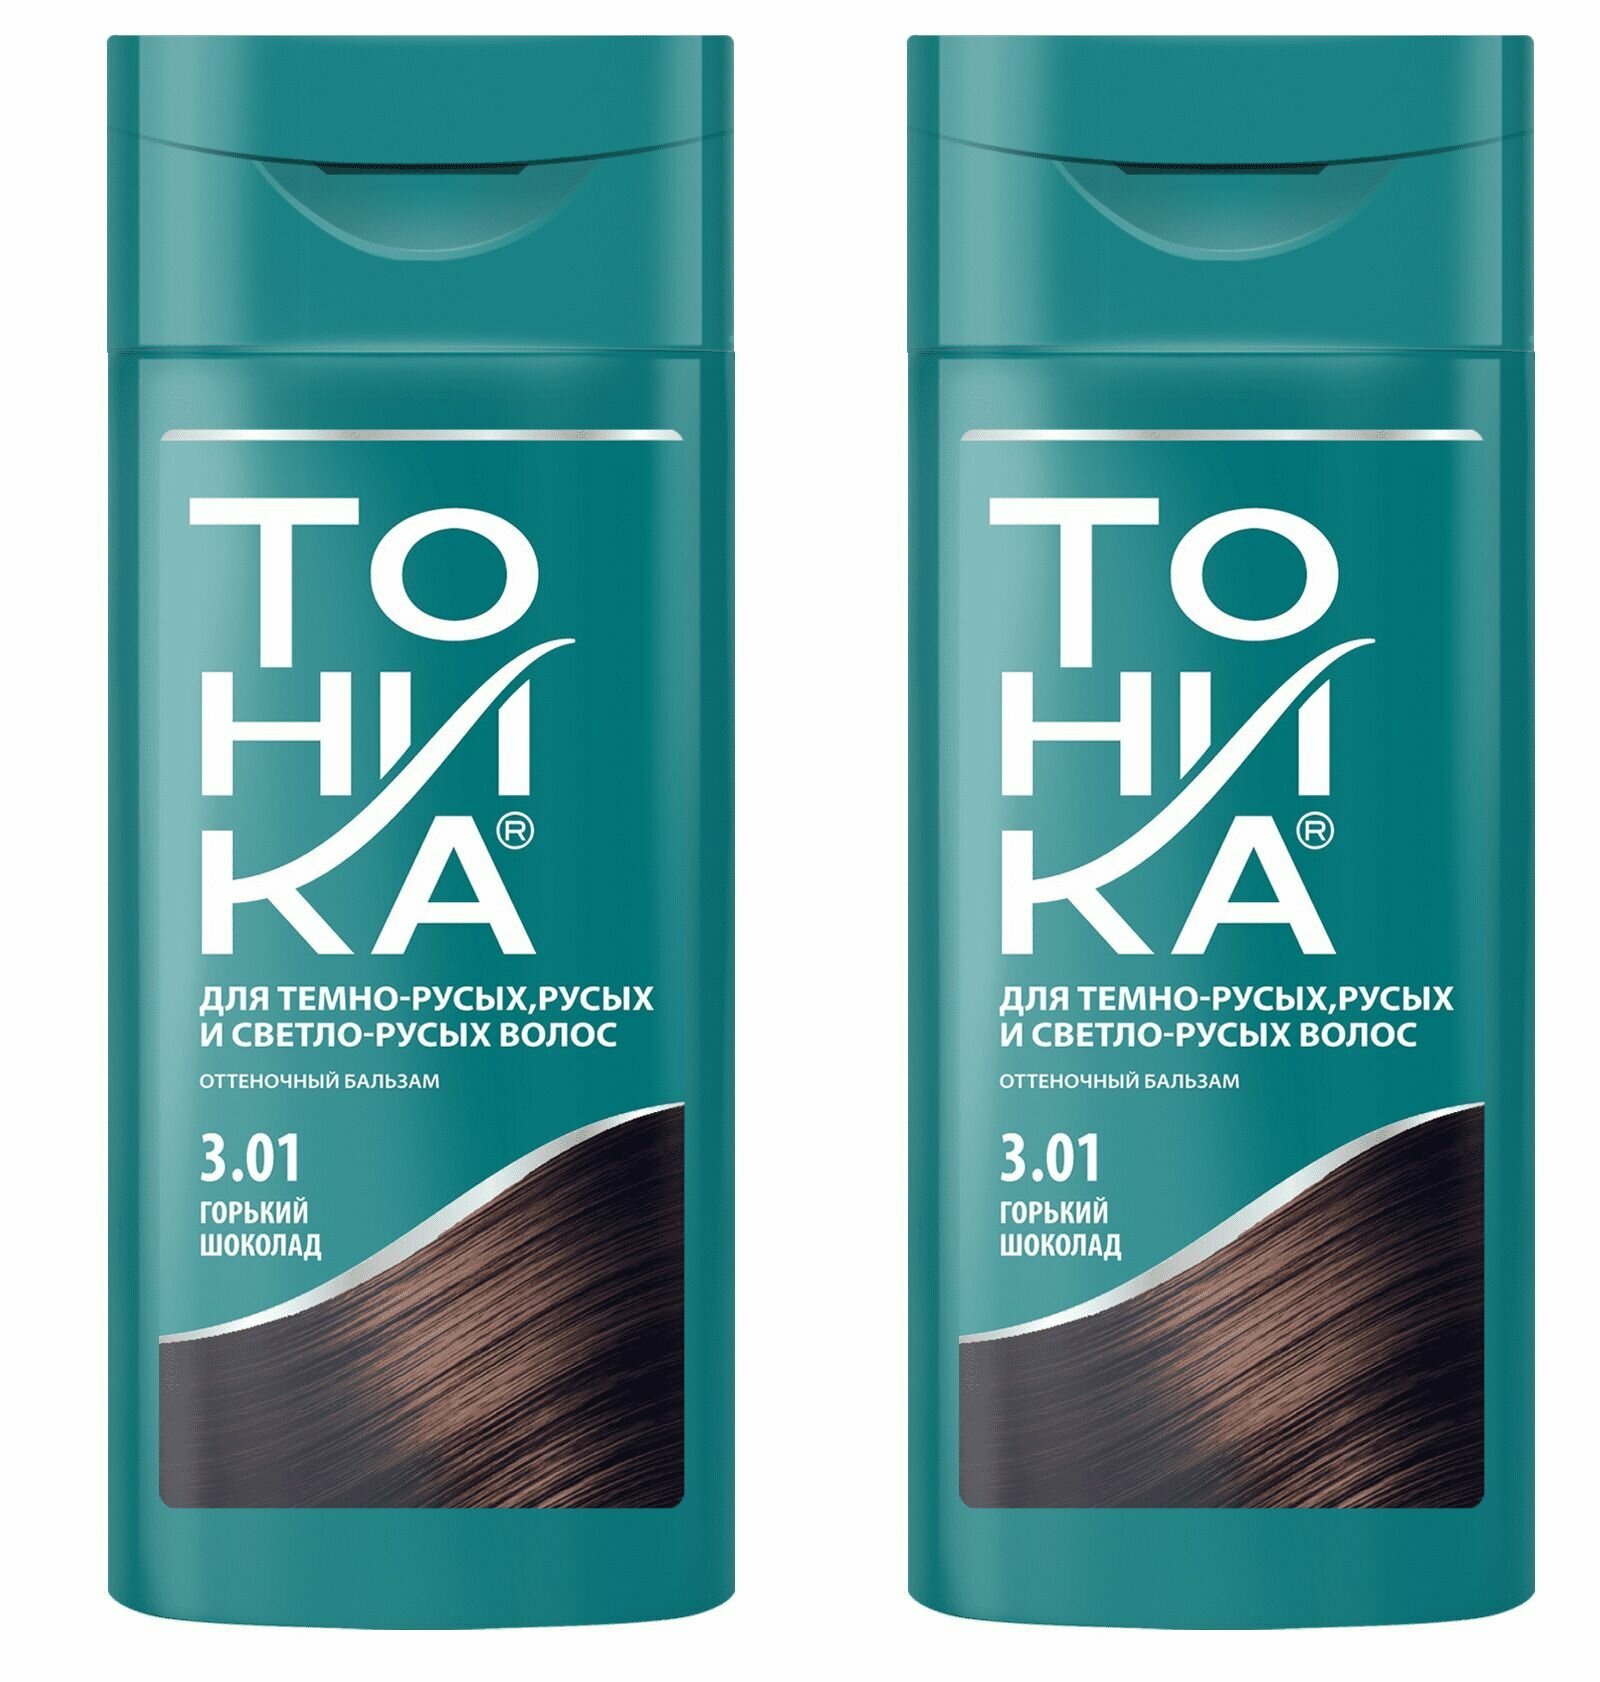 Оттеночный бальзам для волос с эффектом биоламинирования, Тоника, 3.01 горький шоколад, 150 мл, 2 шт